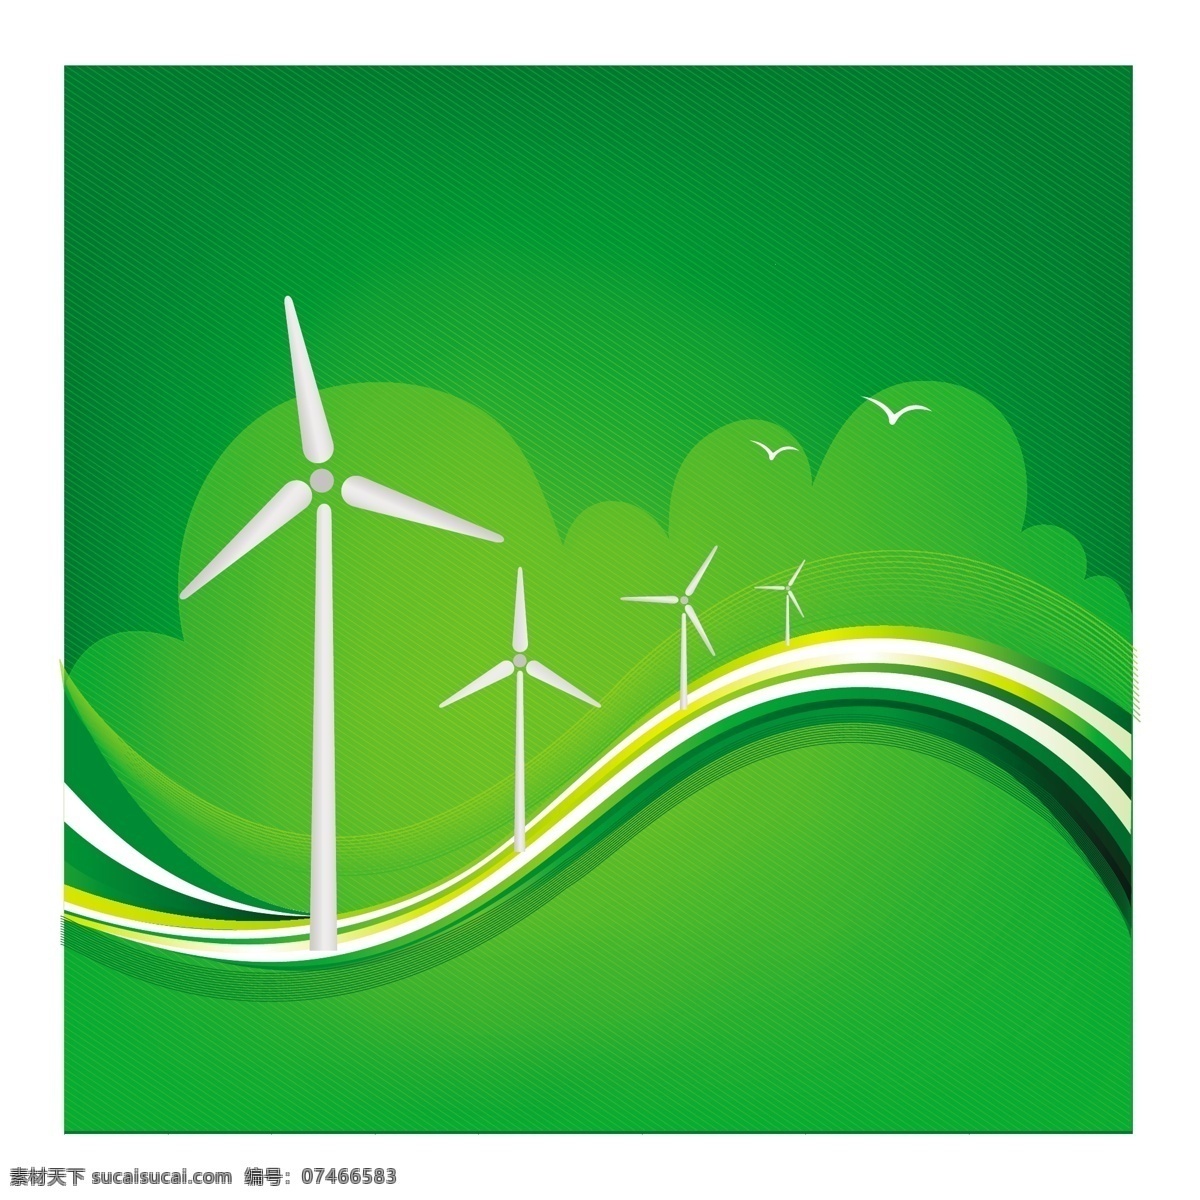 风 风力涡轮机 涡轮机 自由 免费 卡通 矢量动画 风力 载体 矢量 能量 场 绿色